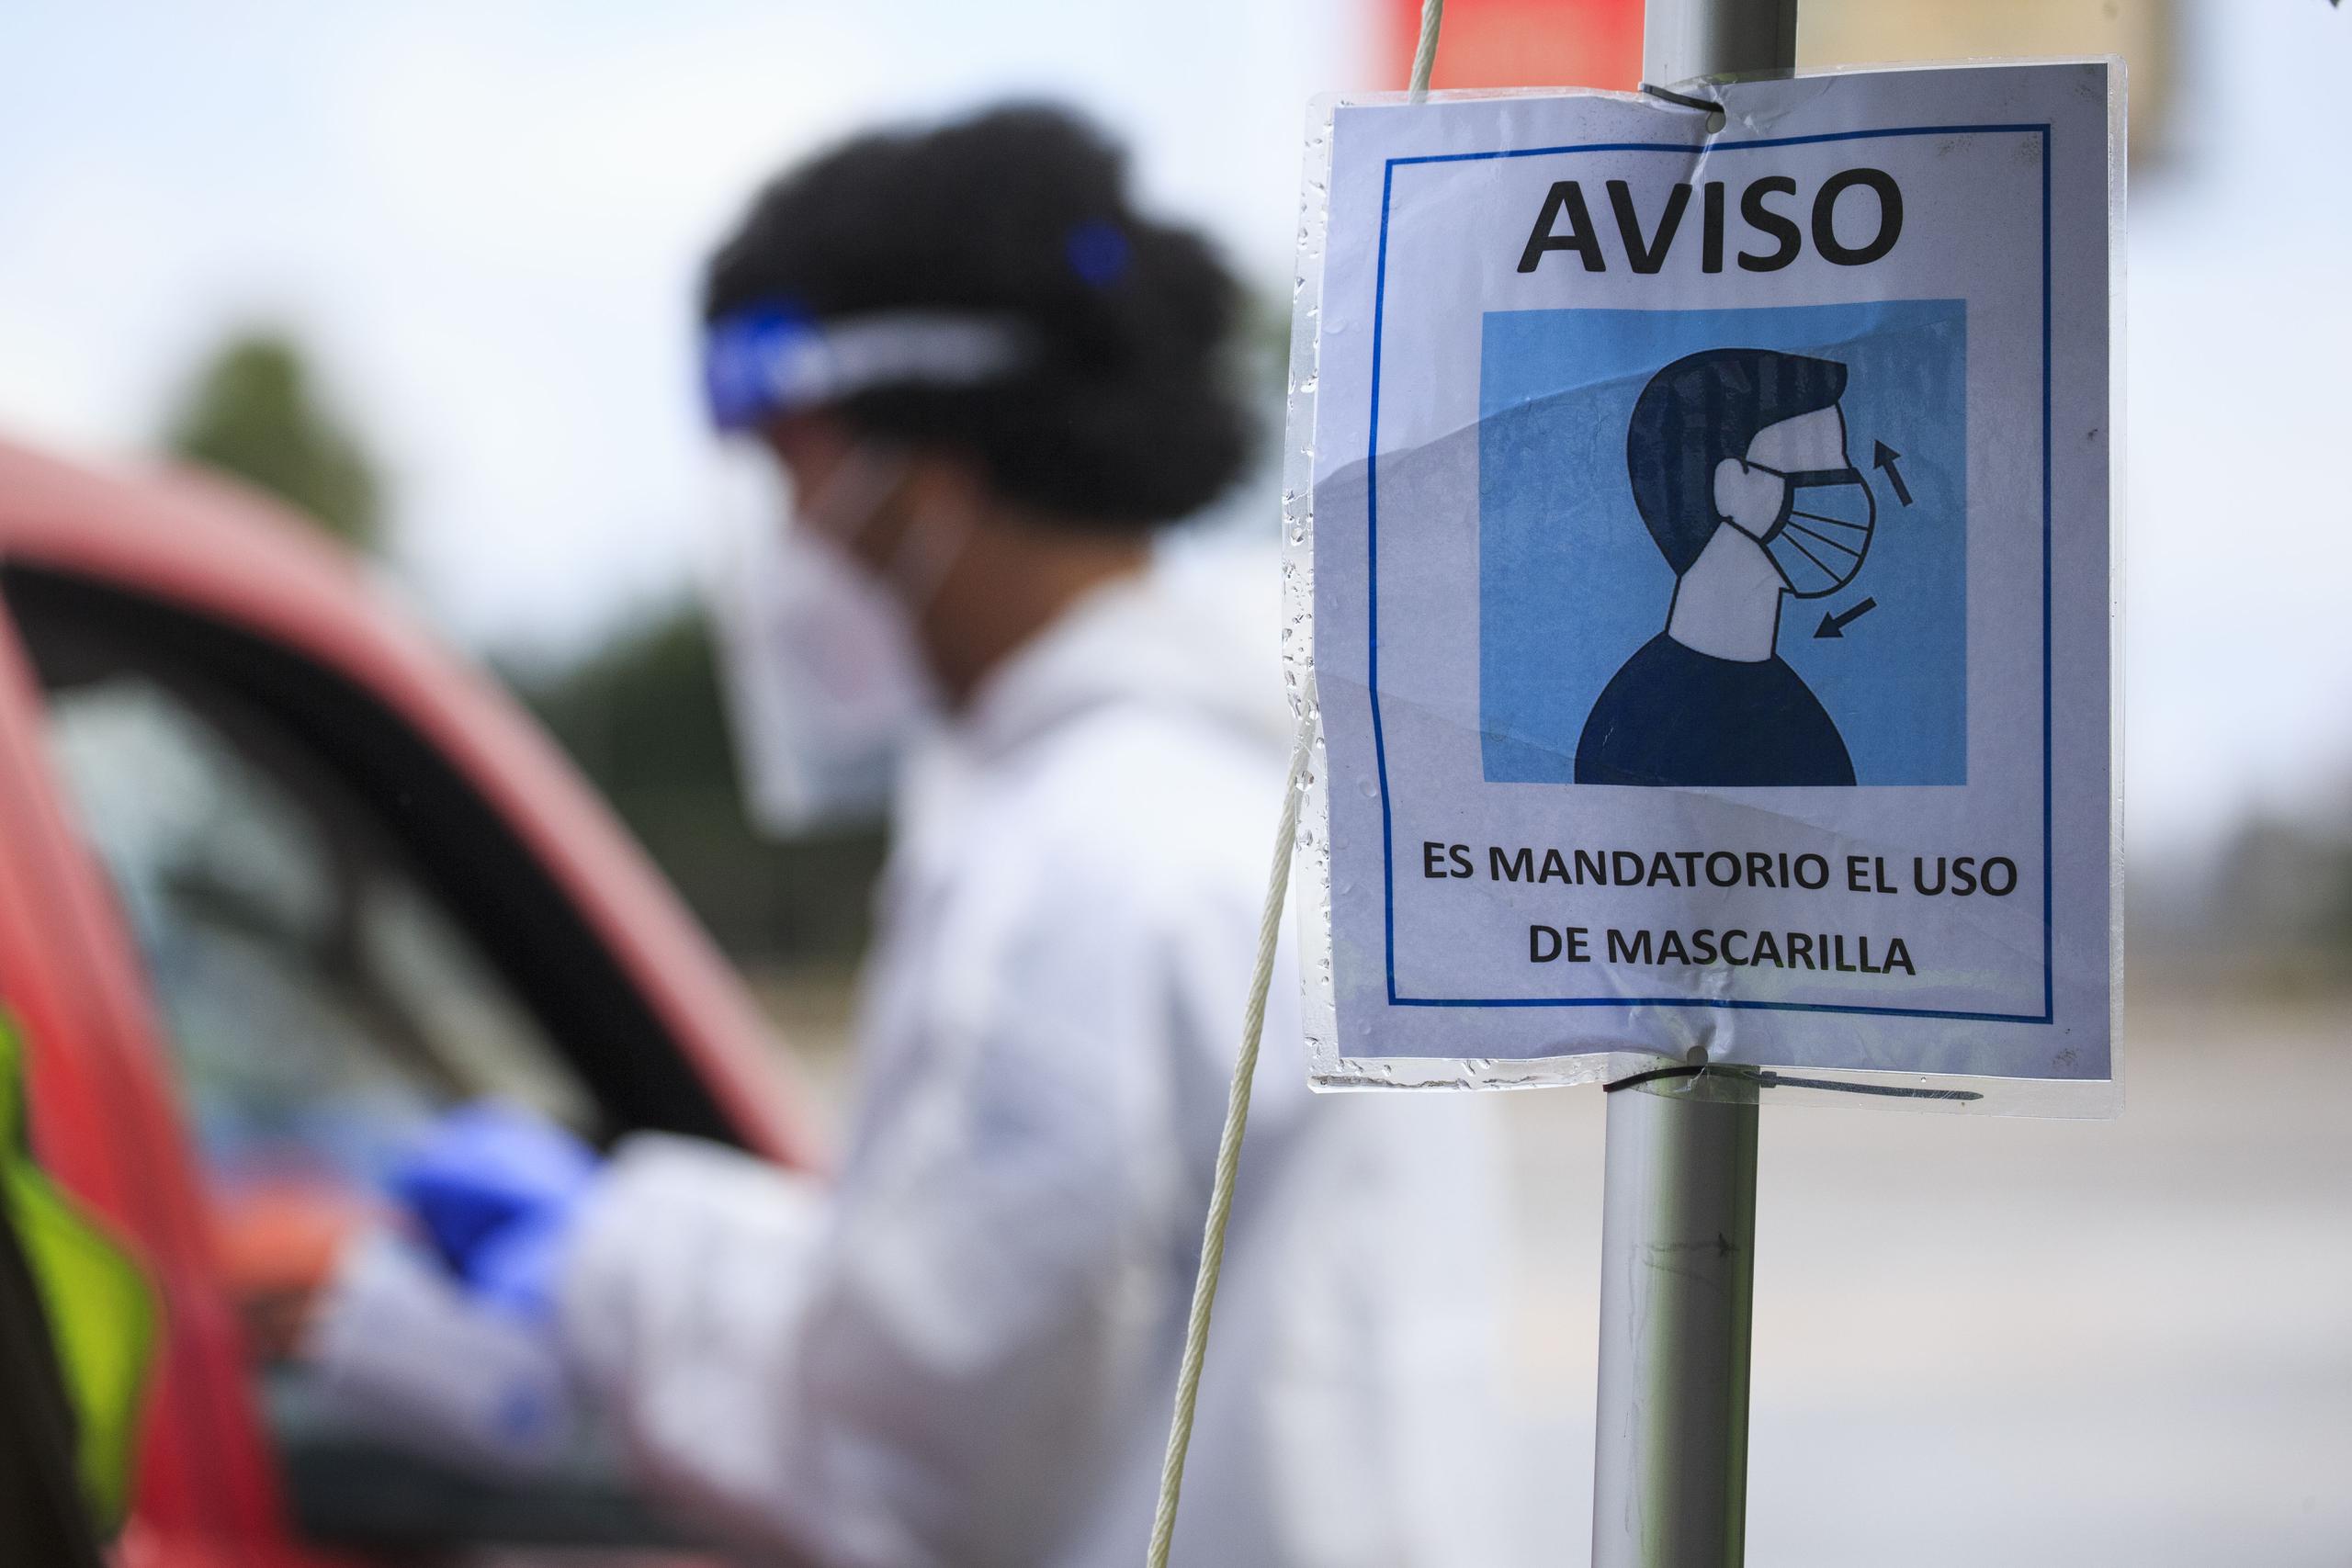 Los municipios que reportan el mayor número de brotes, al momento, son San Juan con 24 y Mayagüez con 23, indicó el Departamento de Salud.